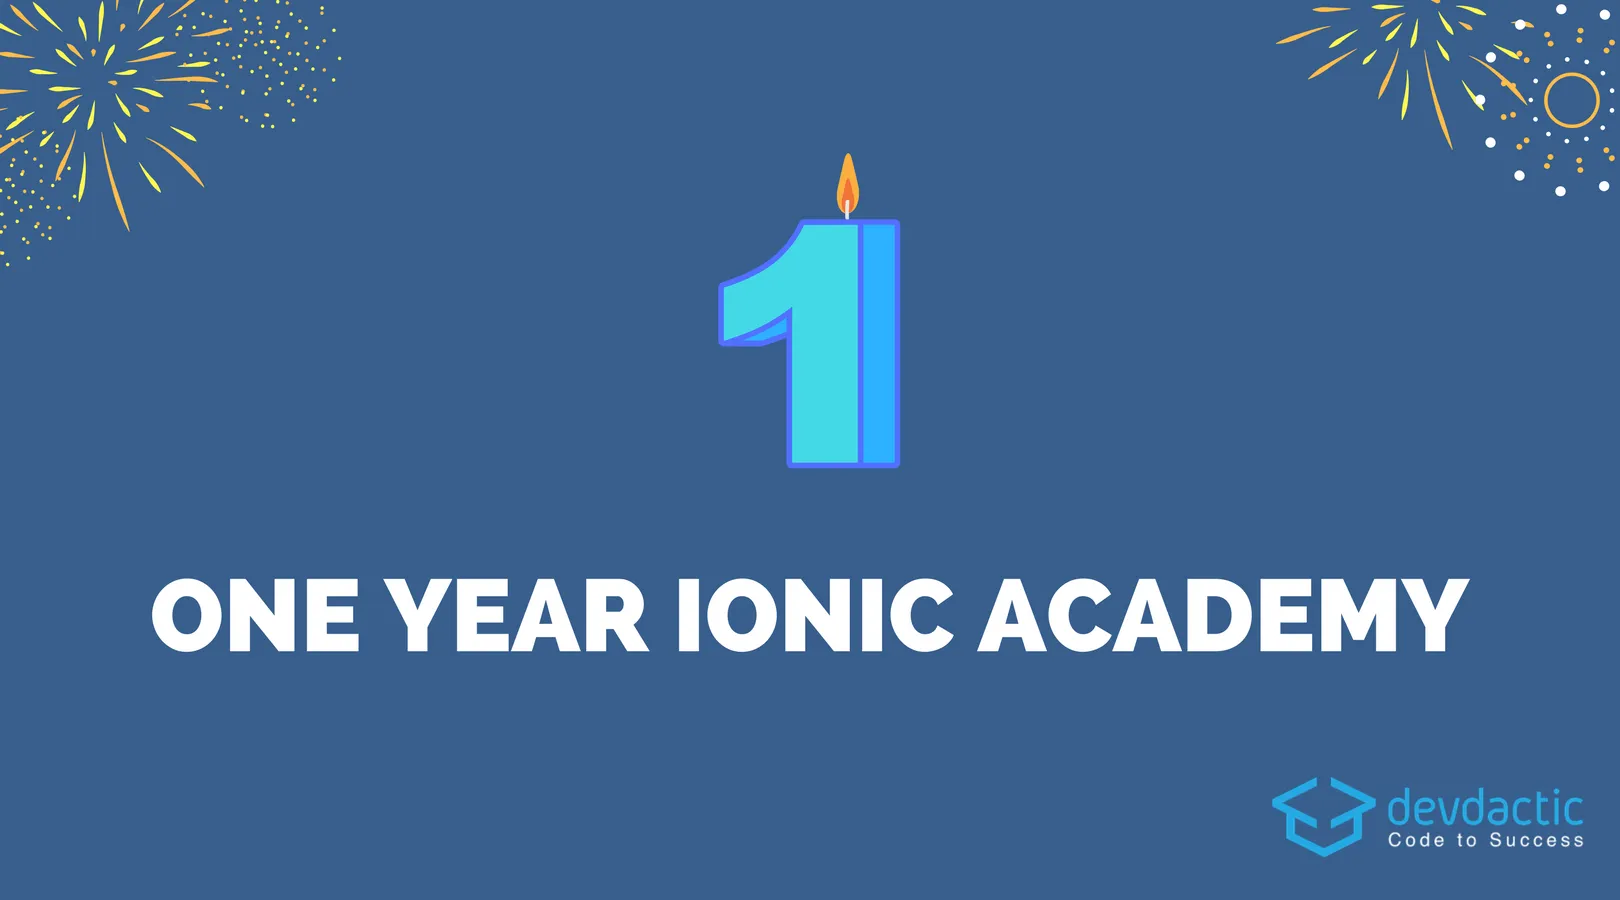 Celebrating One Year Ionic Academy